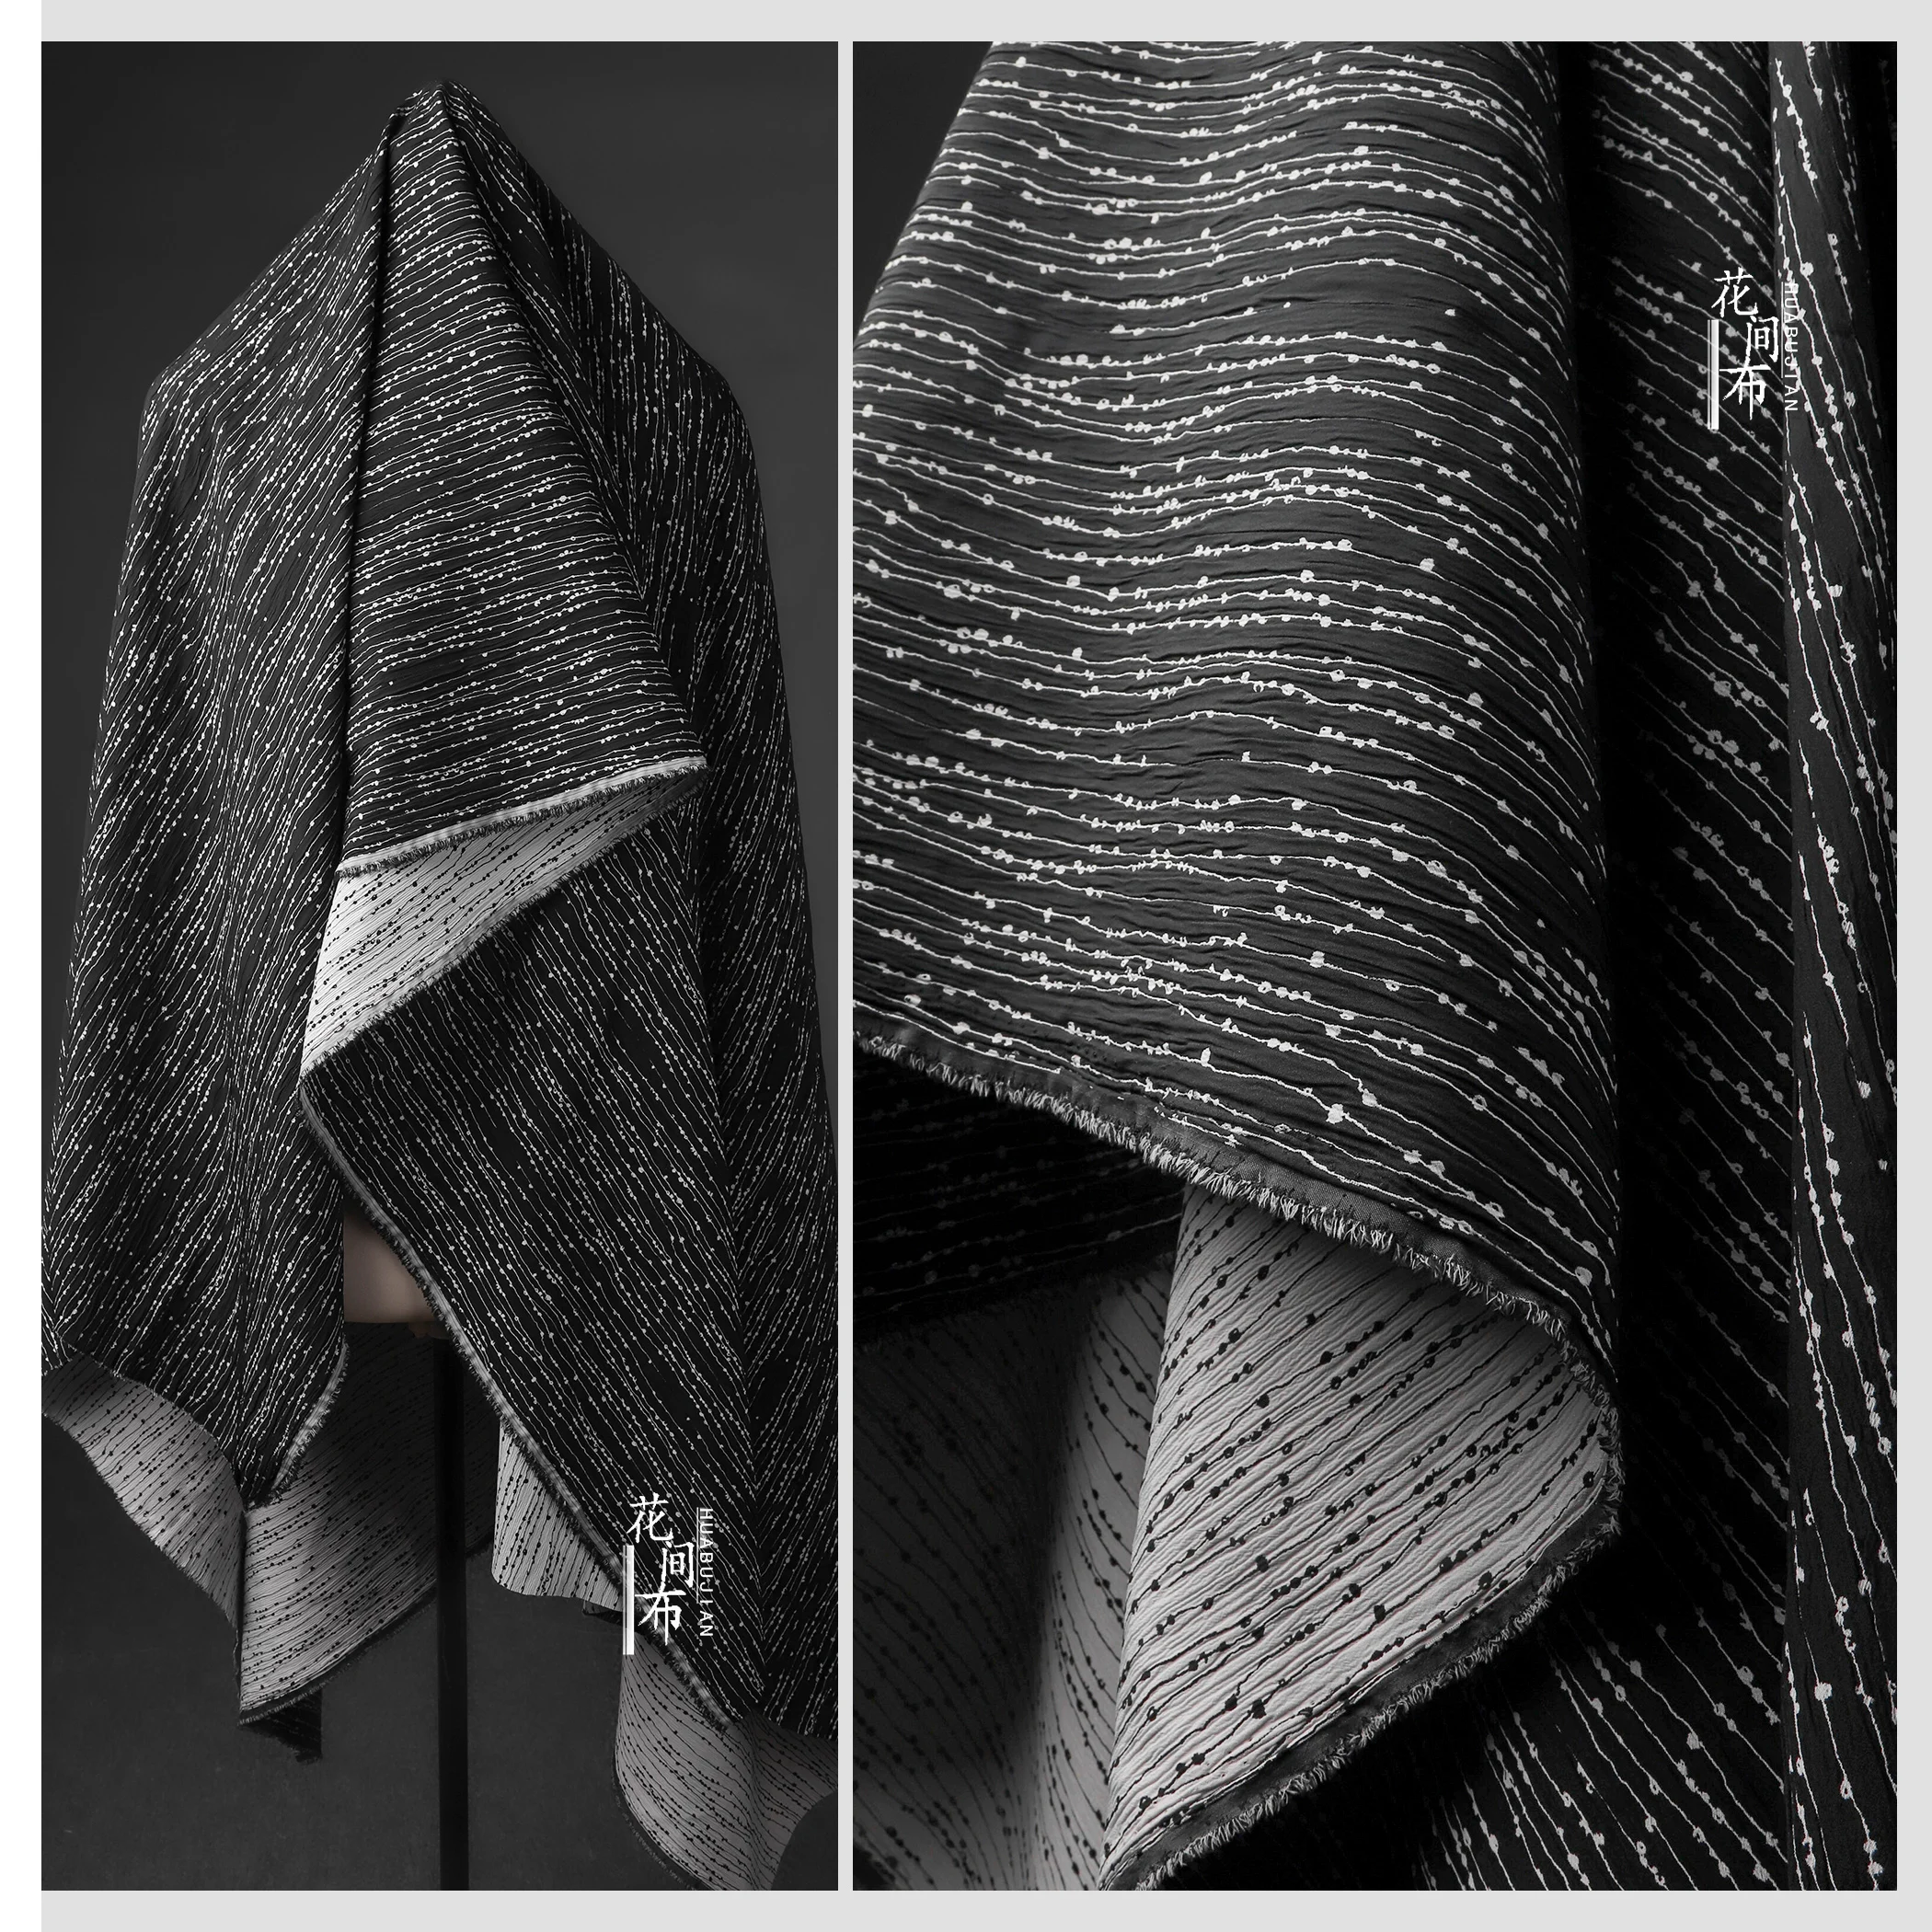 

Микро-жаккардовая ткань в черный горошек, полосатая полуюбка, куртка, платье, одежда, дизайнерский материал для шитья, оптовая продажа ткани